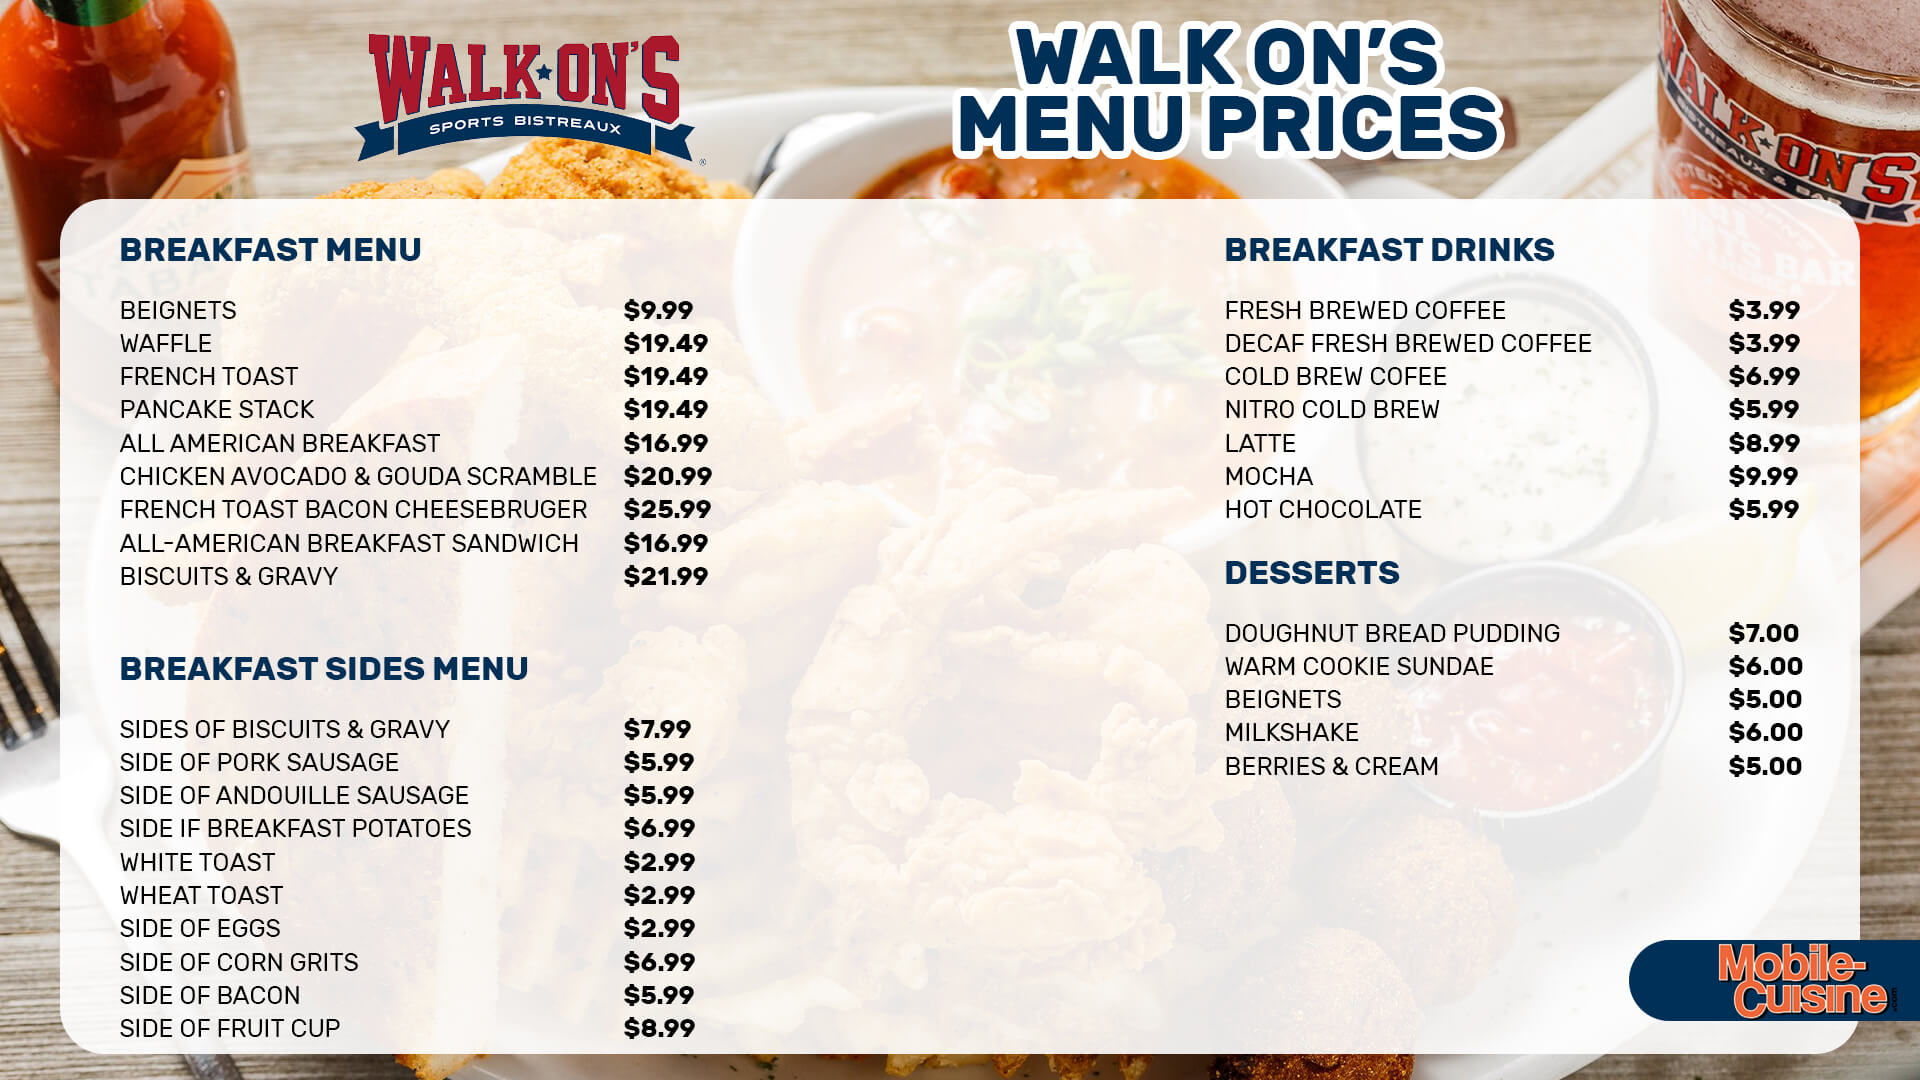 Walk On’s menu prices